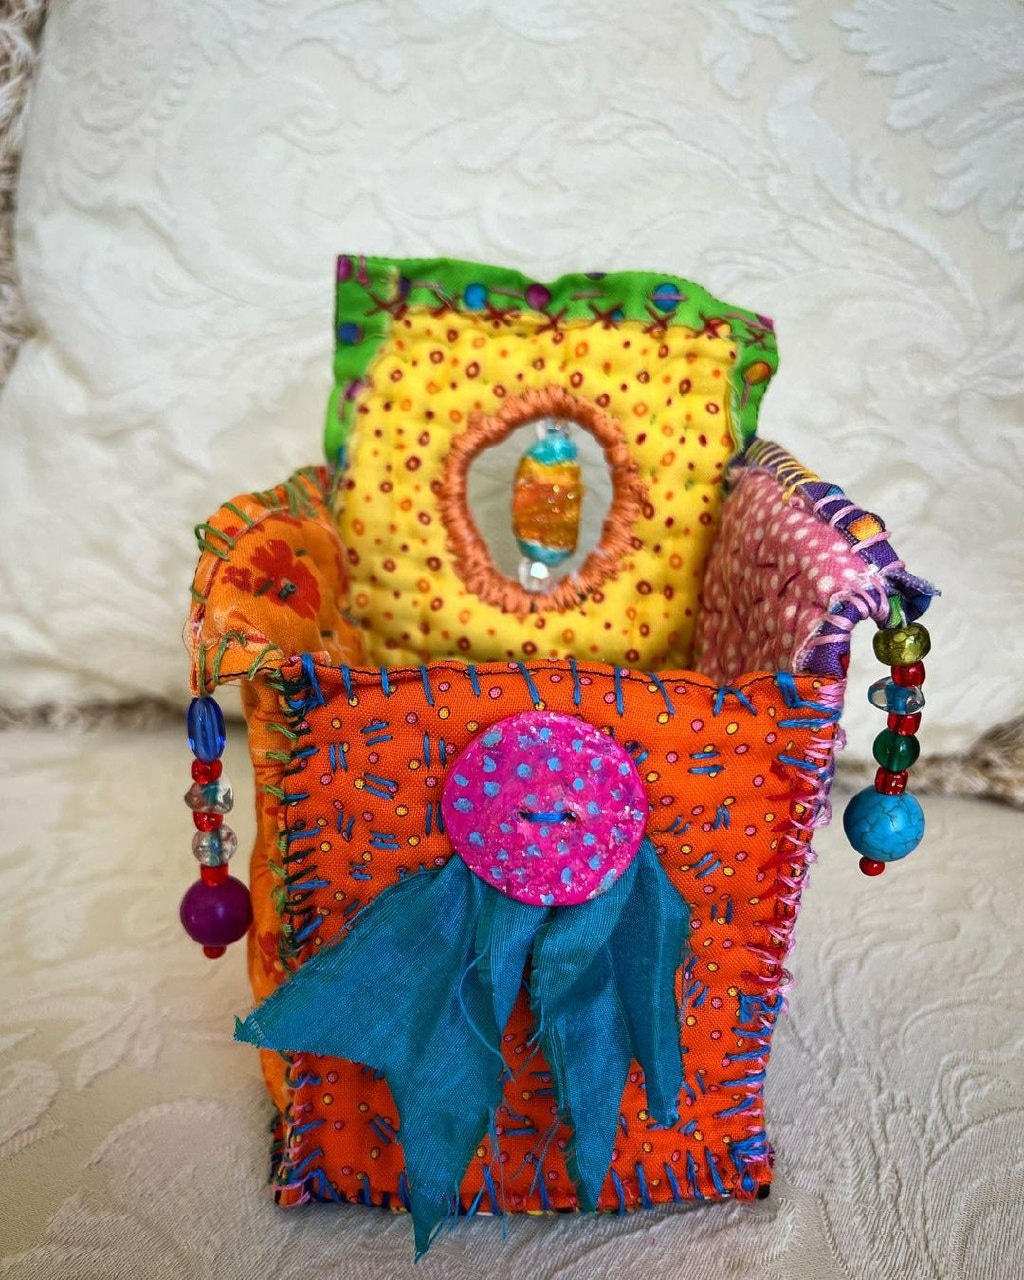 Текстильные фантазии Darlene Winter вышивка,идеи и вдохновение,лоскутное шитье,мастерство,творчество